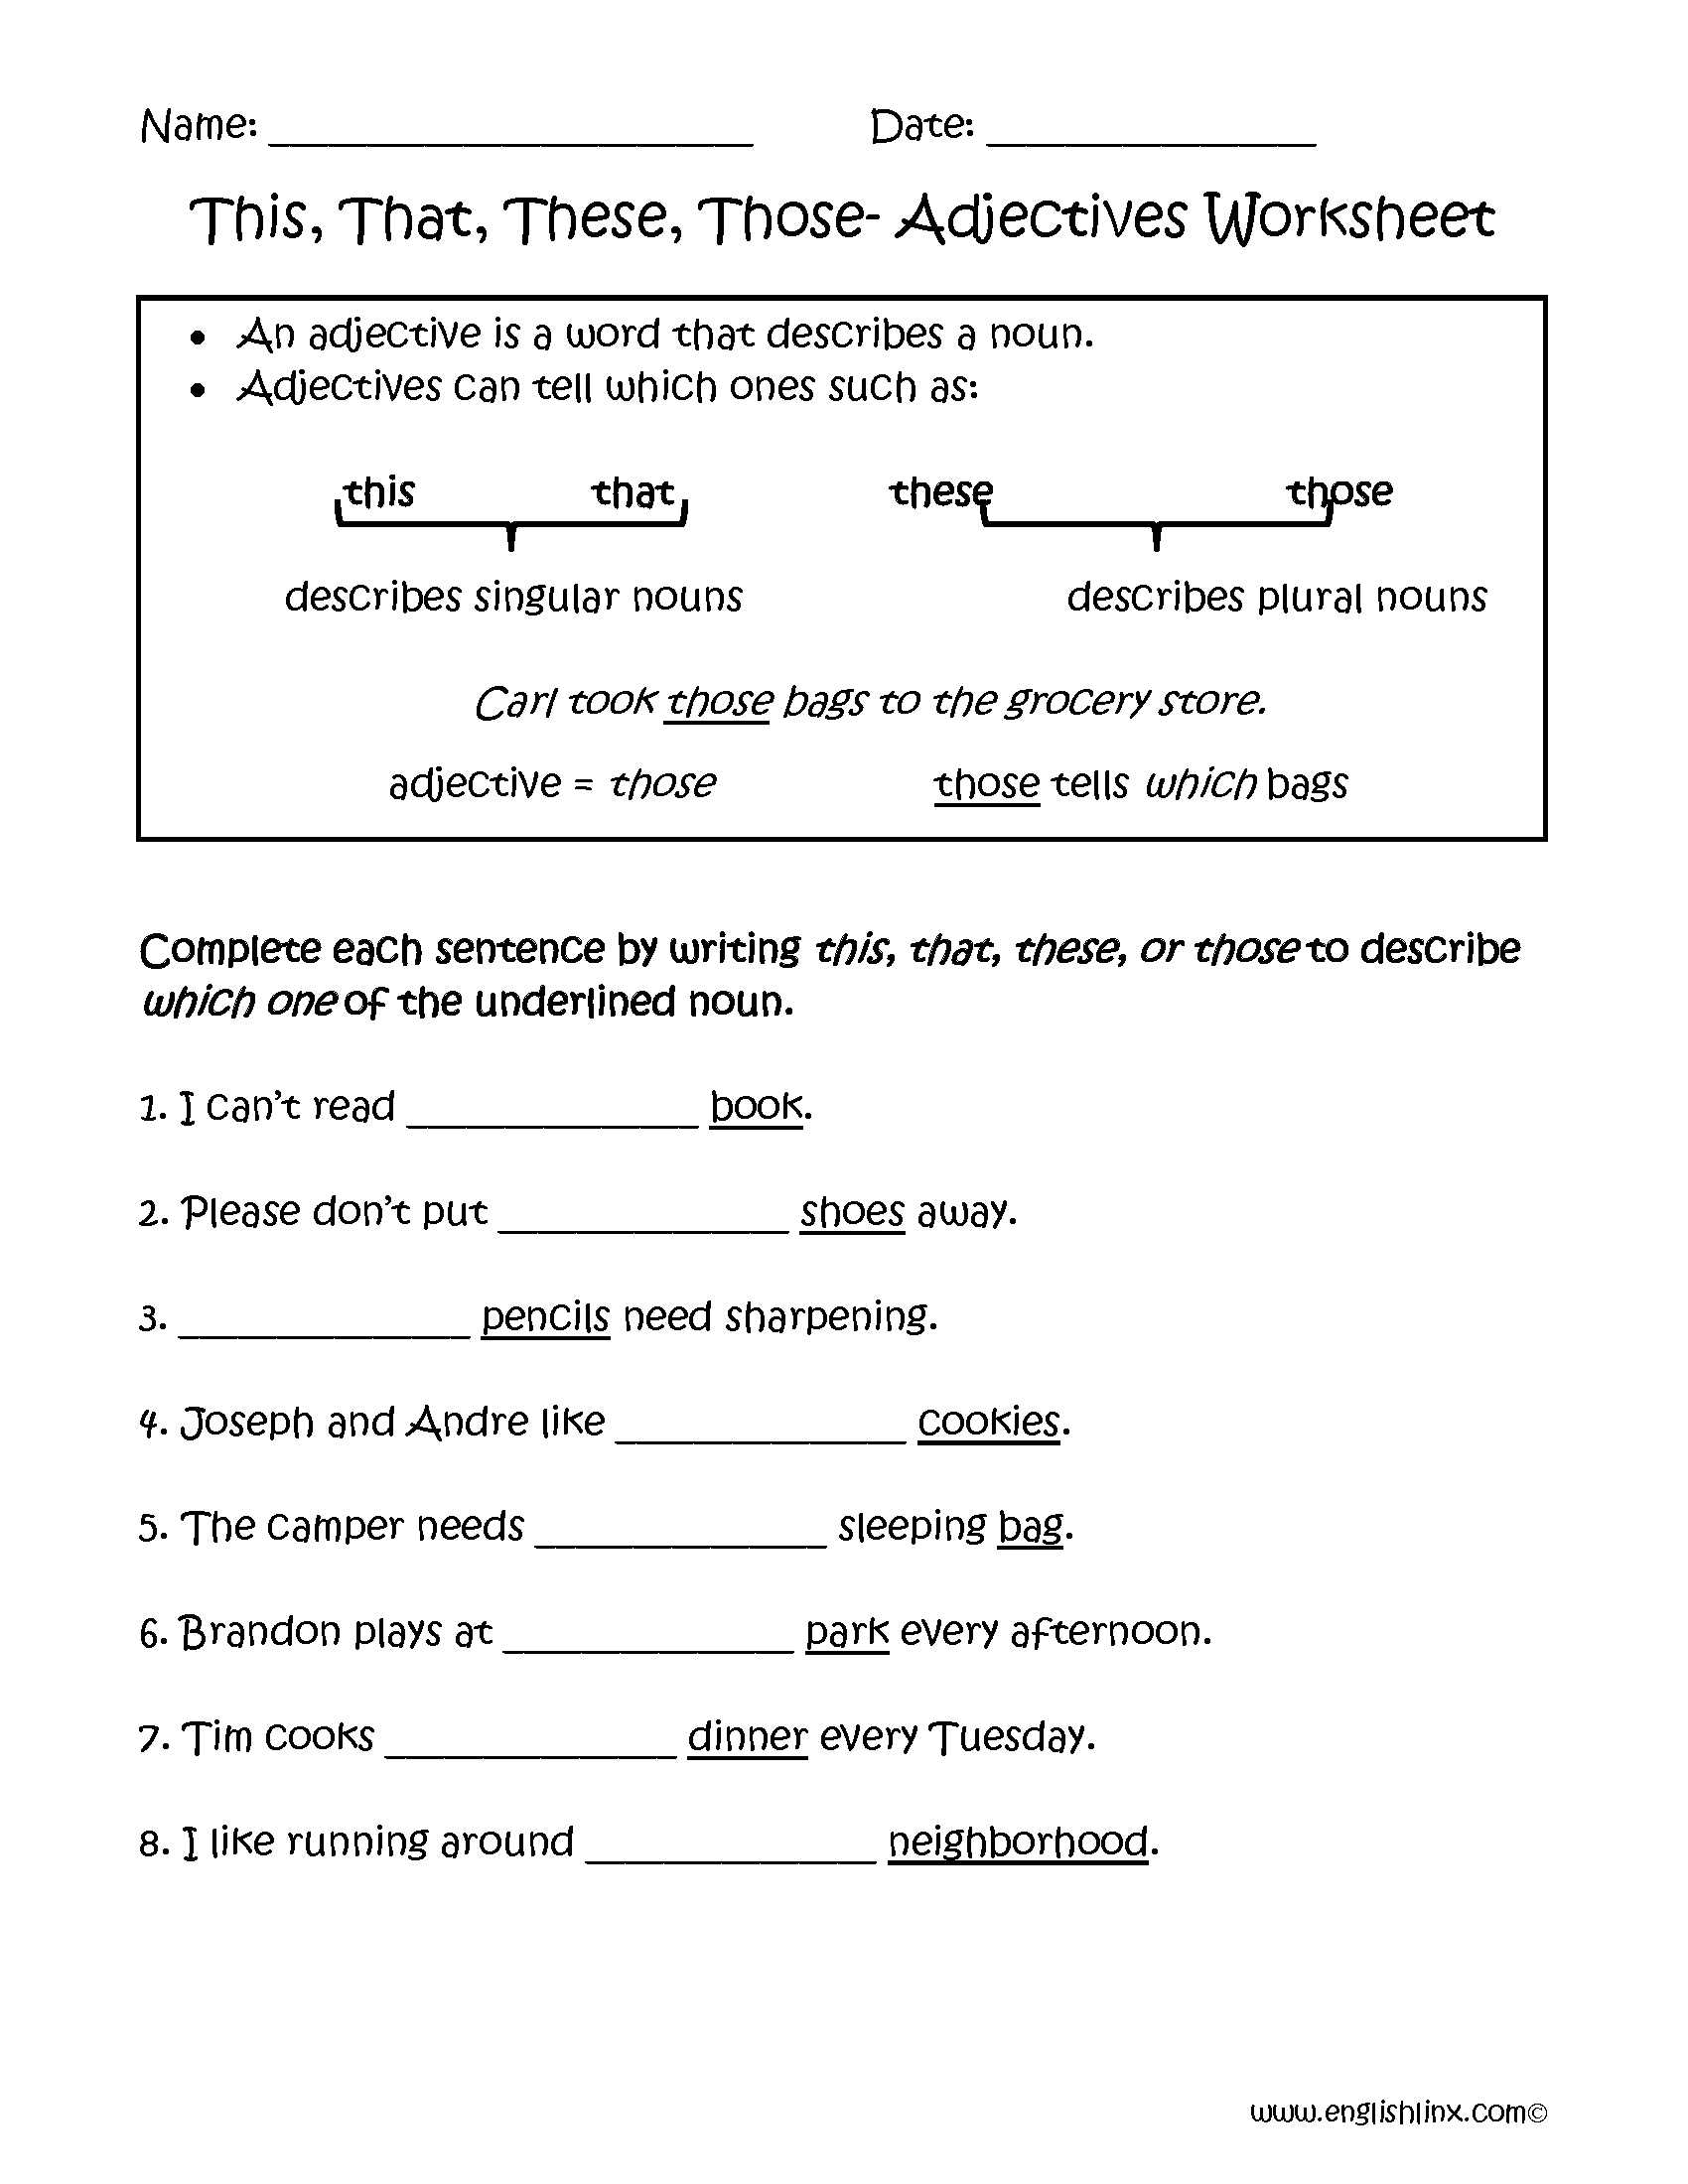 adjectives-worksheets-regular-adjectives-worksheets-db-excel